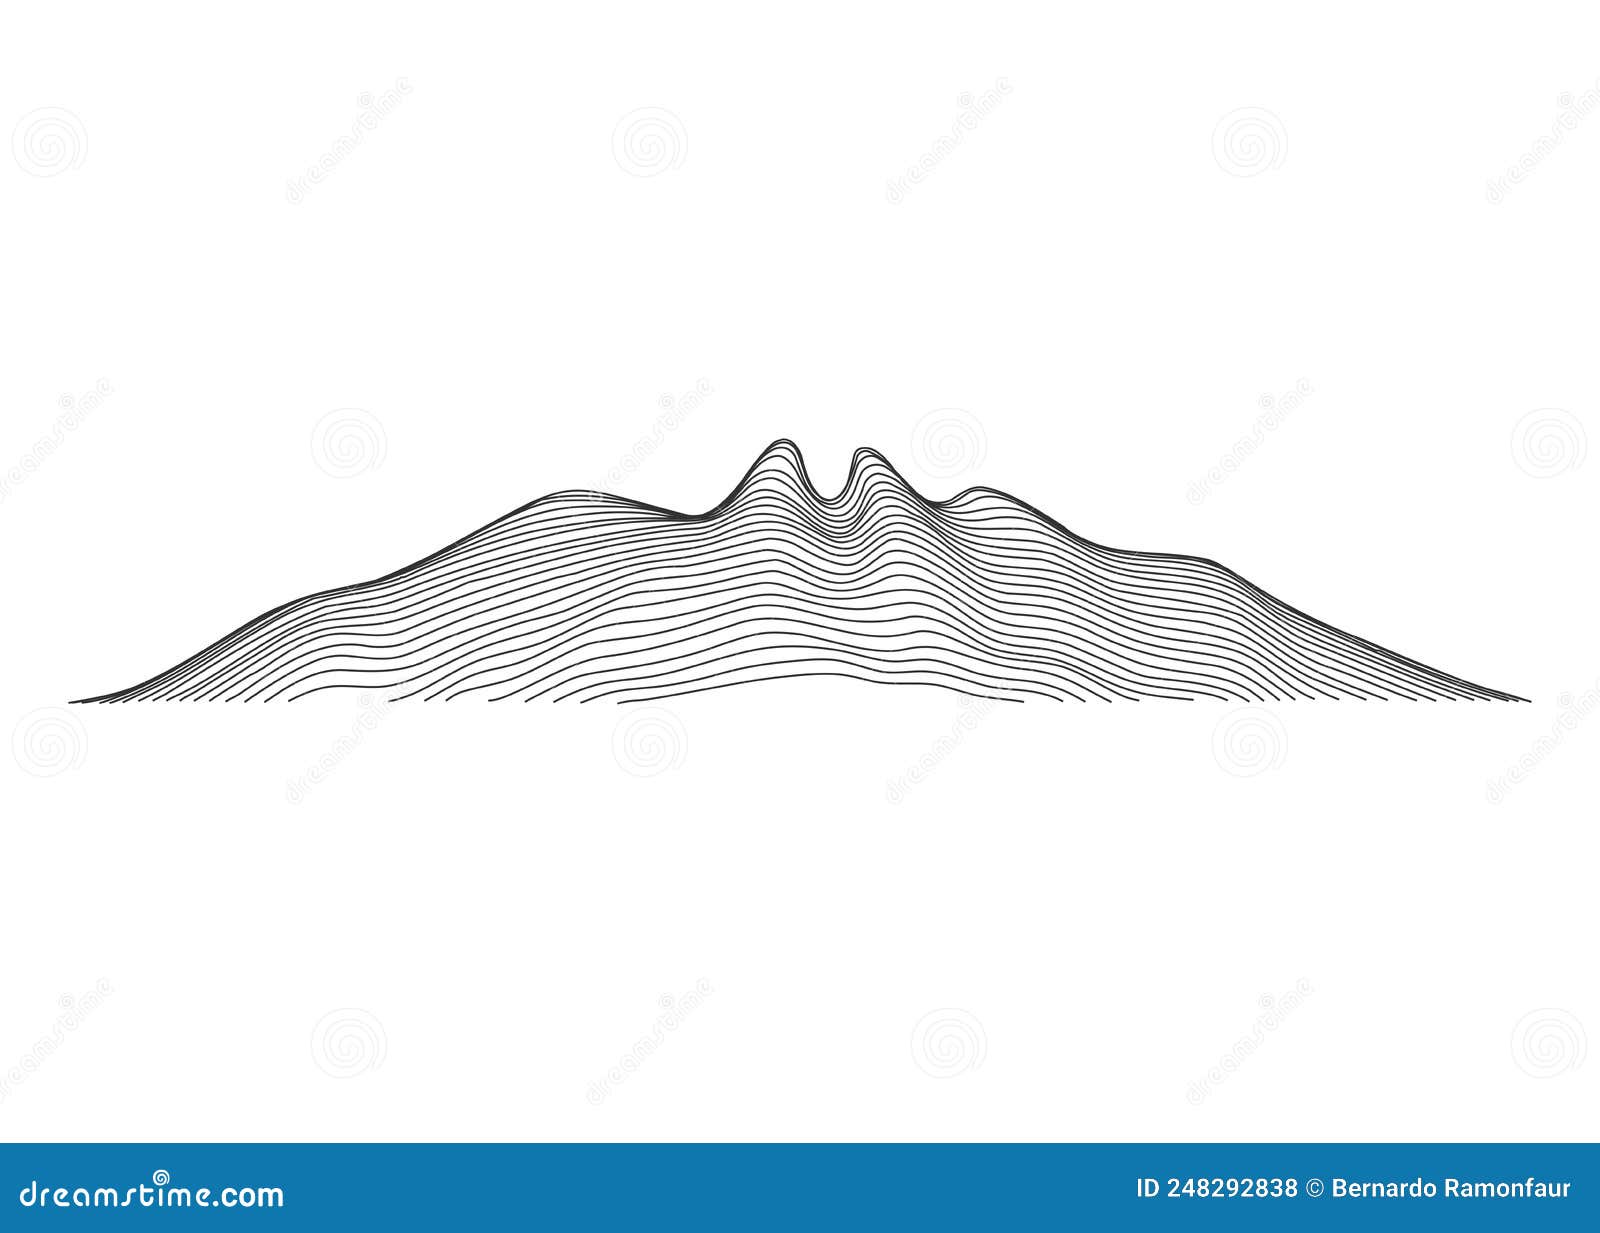 famous mountain called cerro de la silla in the city of monterrey mexico